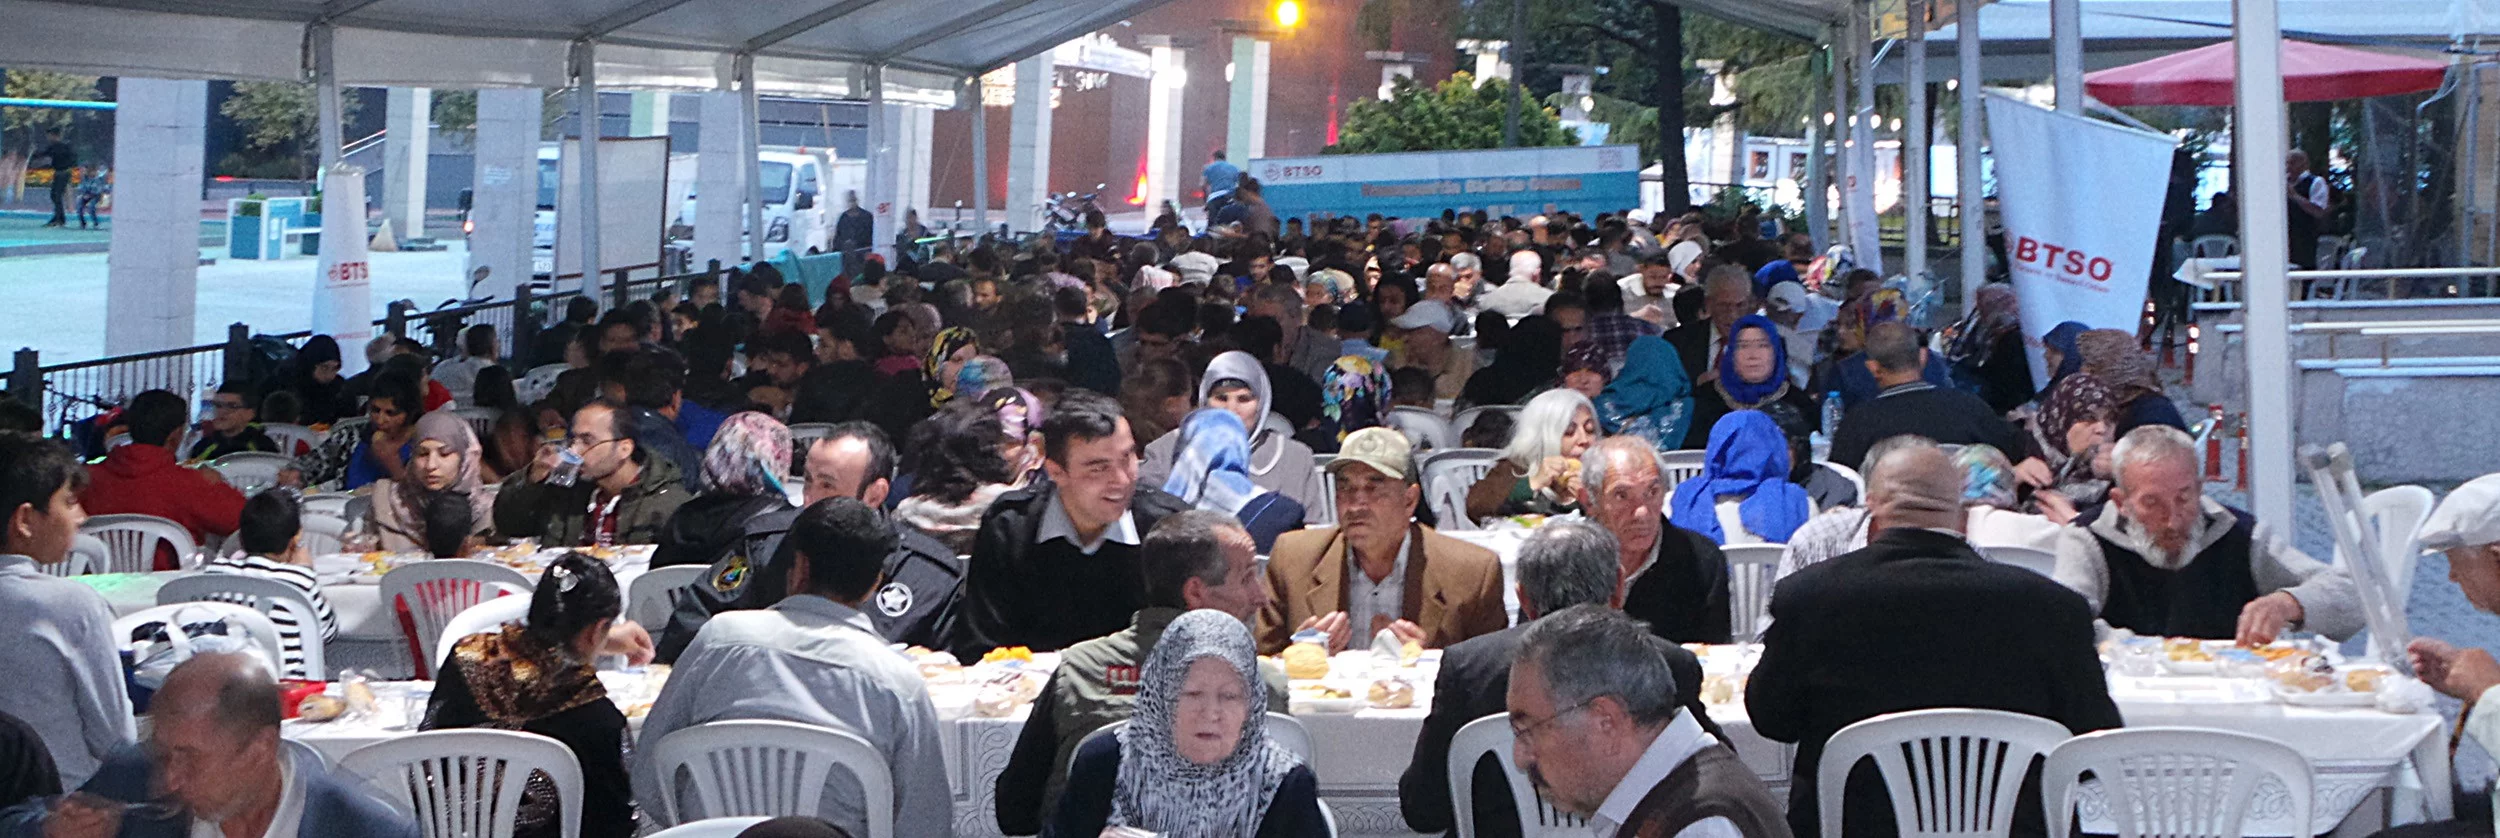 BTSO tarafından açılan iftar sofralarında her gün 2 bin kişi faydalanıyor